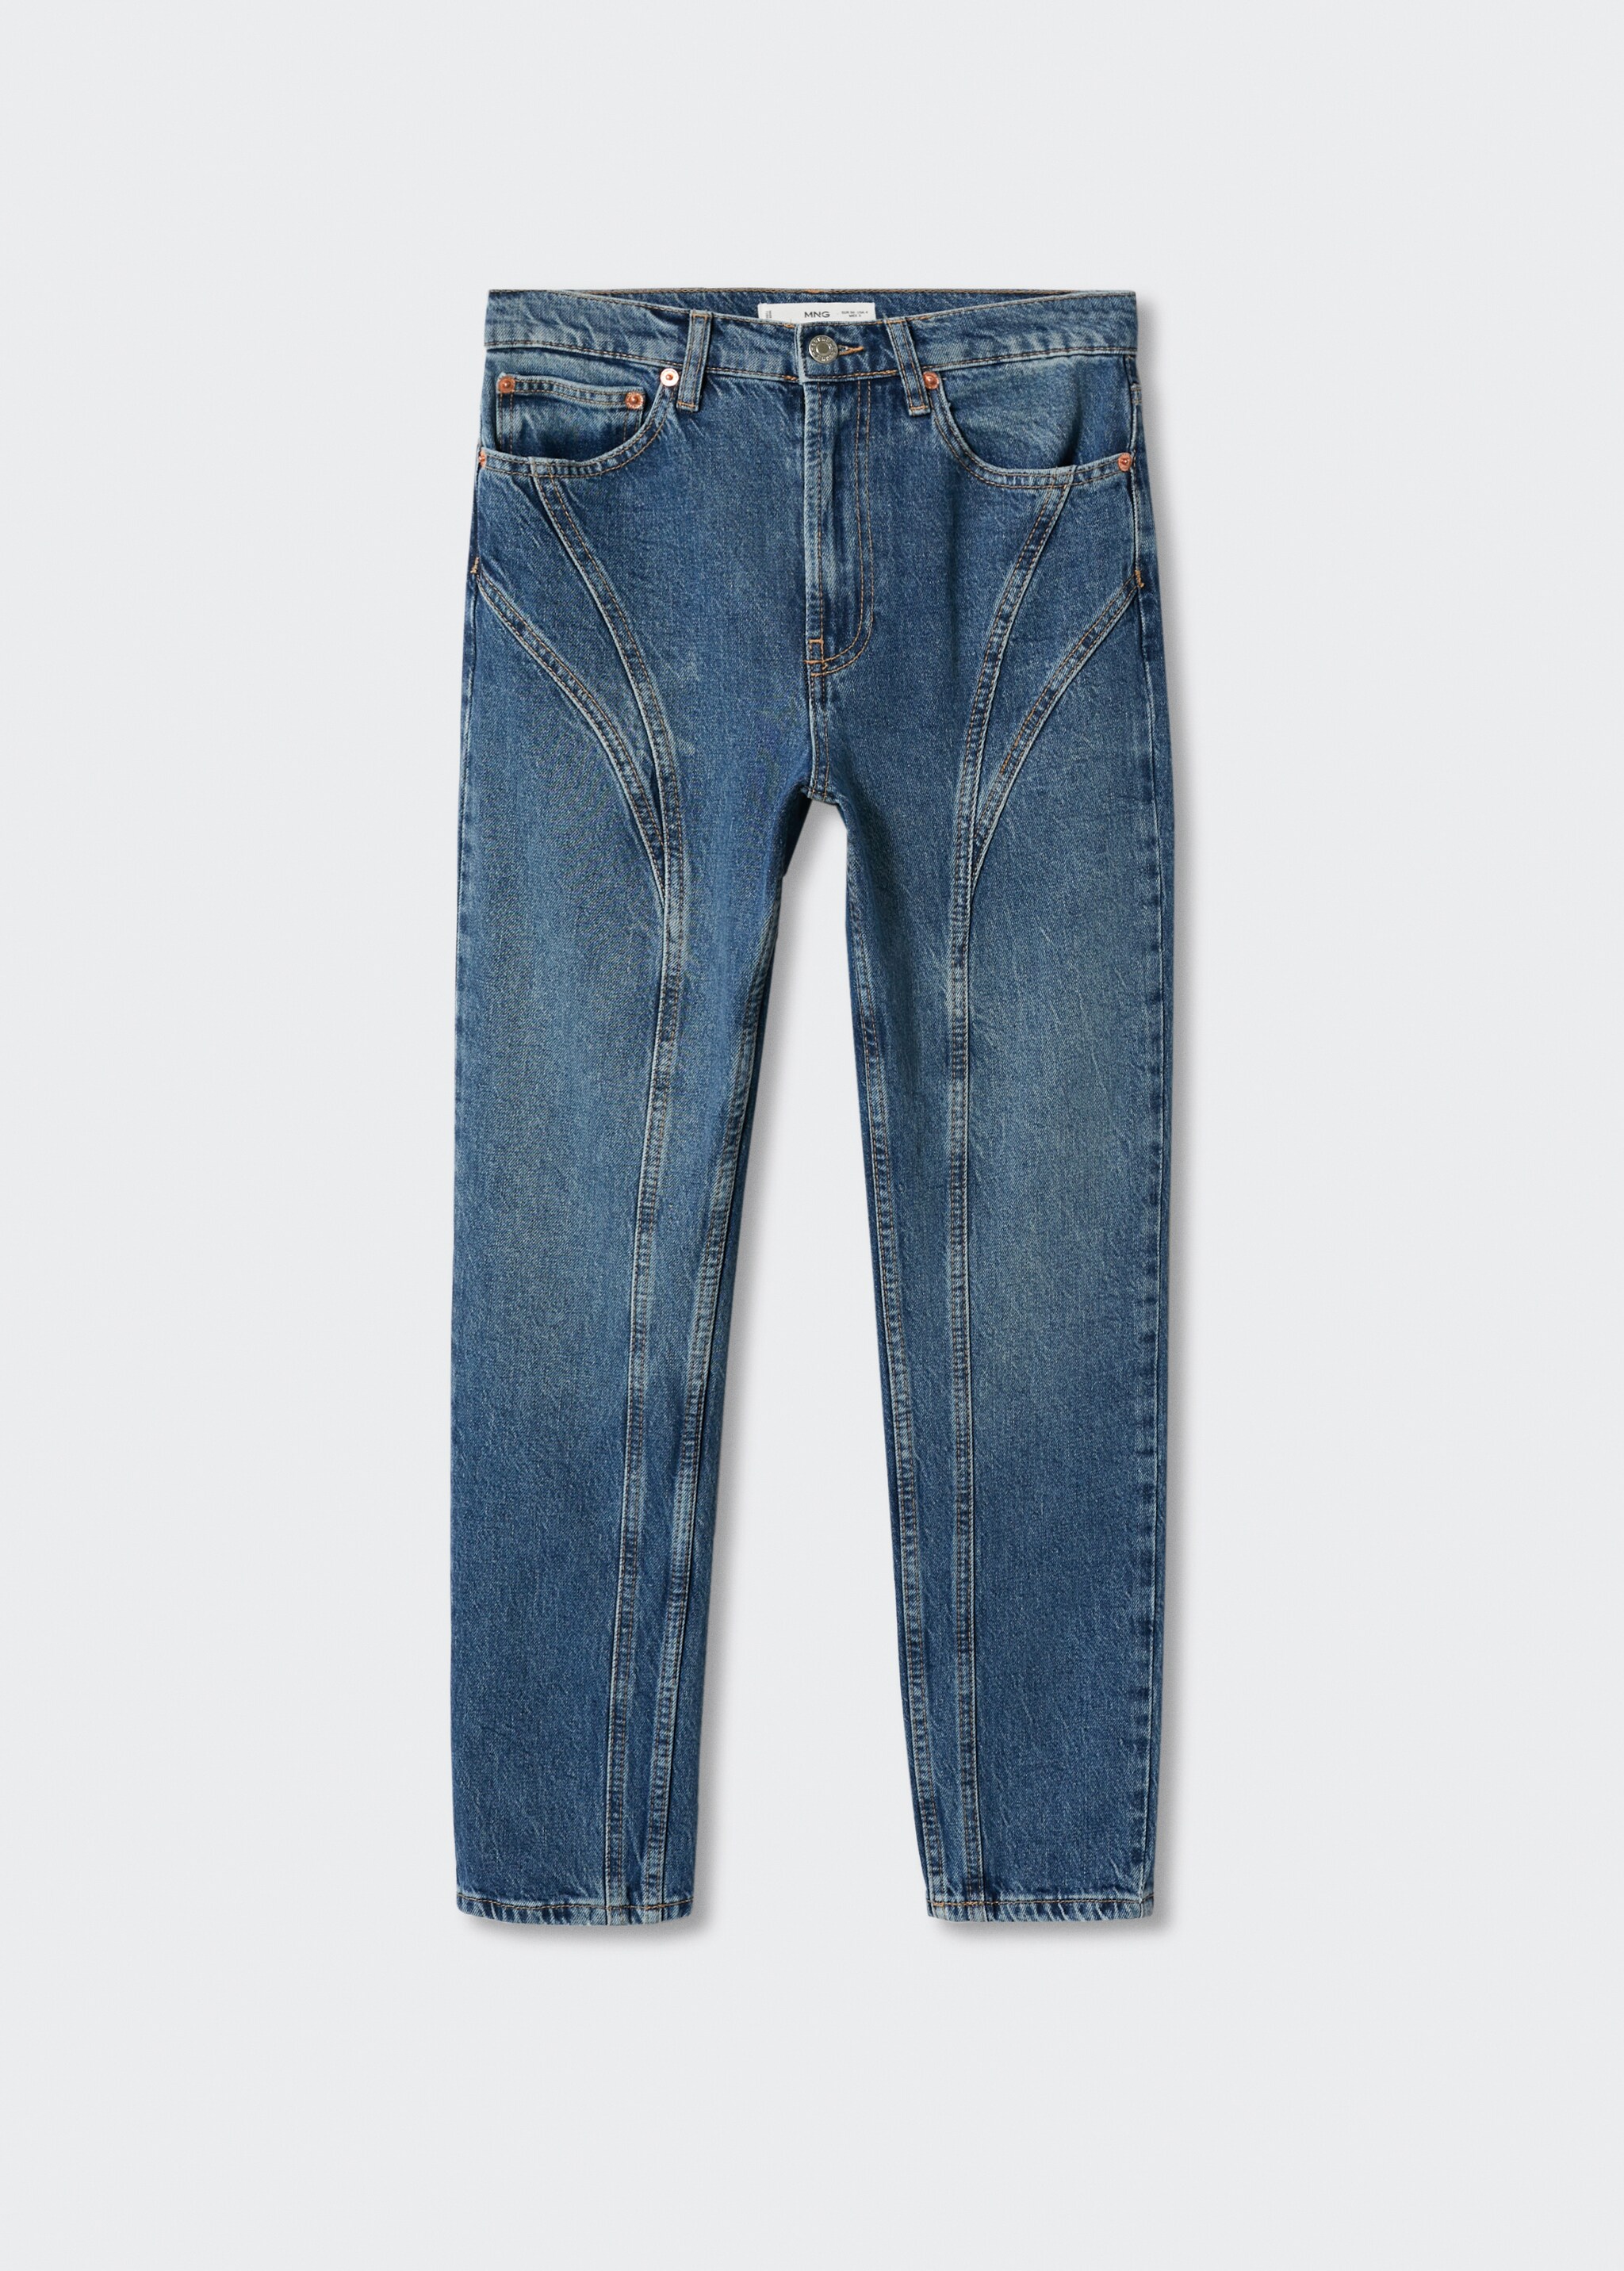 Jeans costuras decorativas - Artículo sin modelo